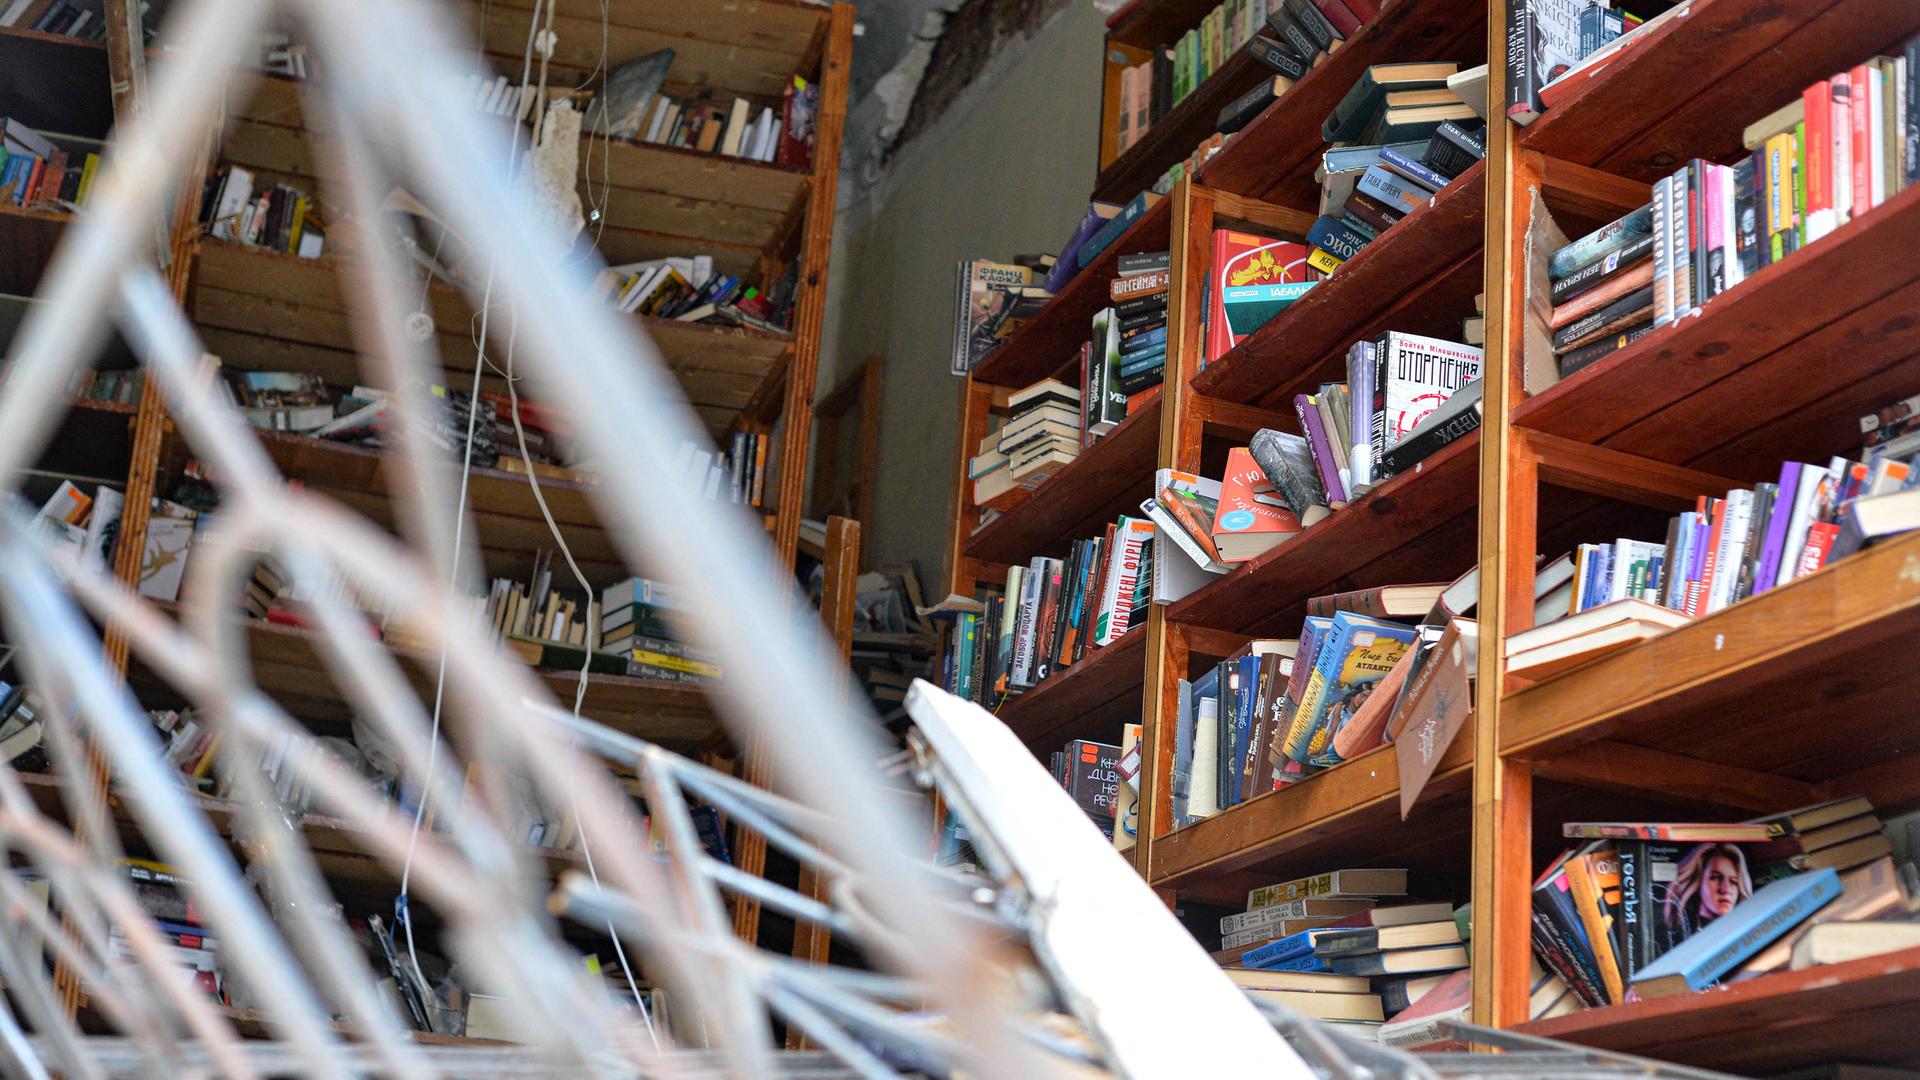 Zerstörte Bibliothek: Metall ragt in den Raum, in kaputten Regalen stehen noch Bücher.